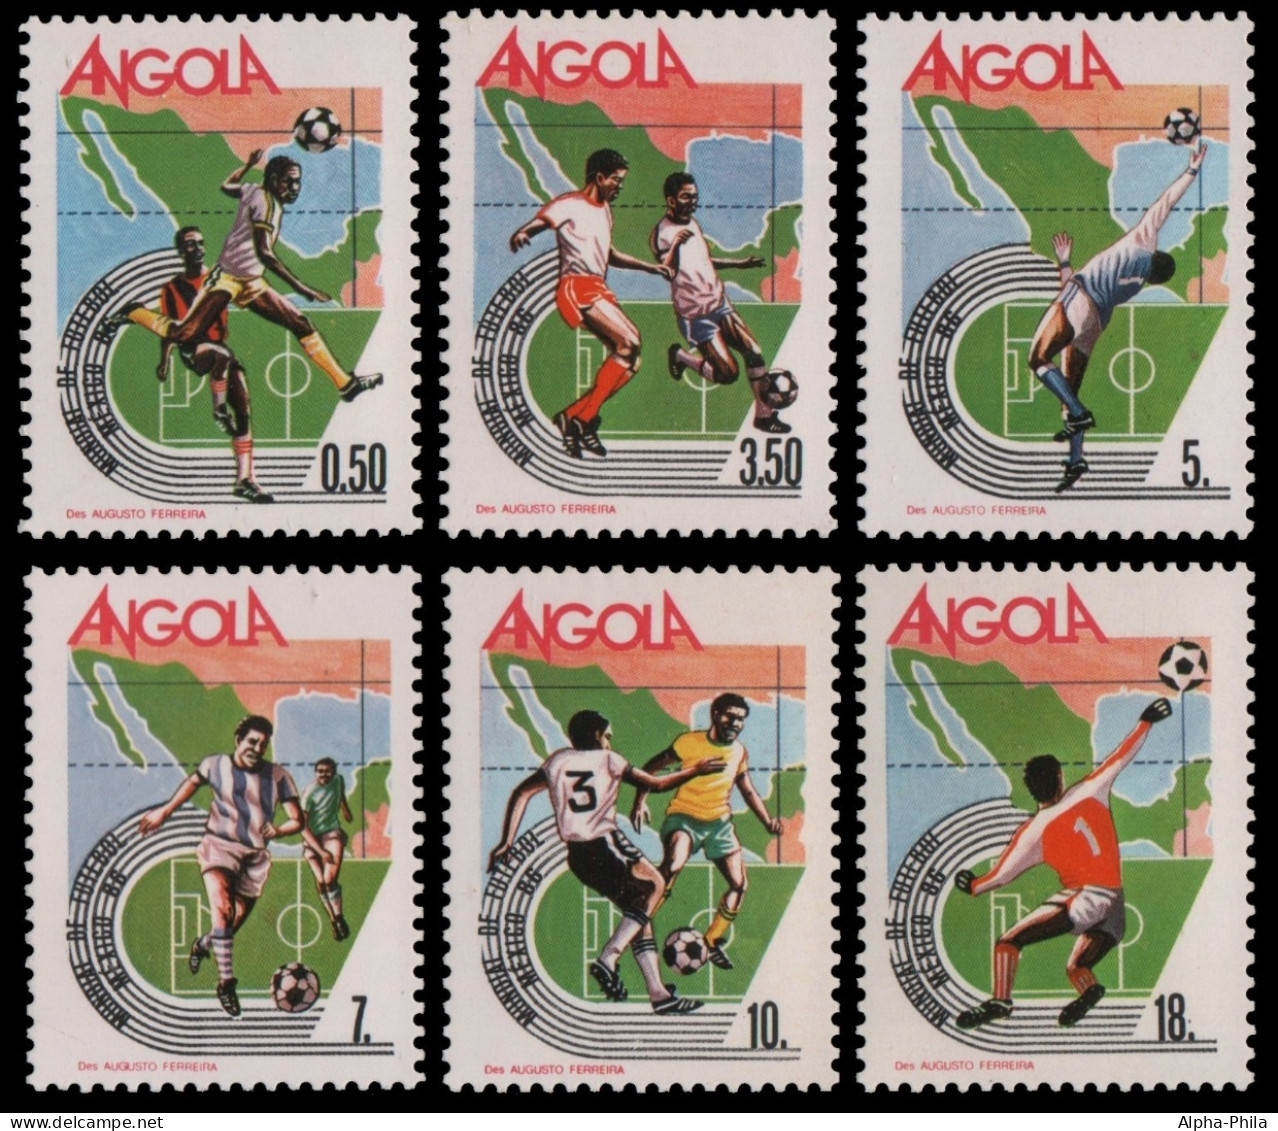 Angola 1986 - Mi-Nr. 739-744 ** - MNH - Fußball / Soccer - Angola